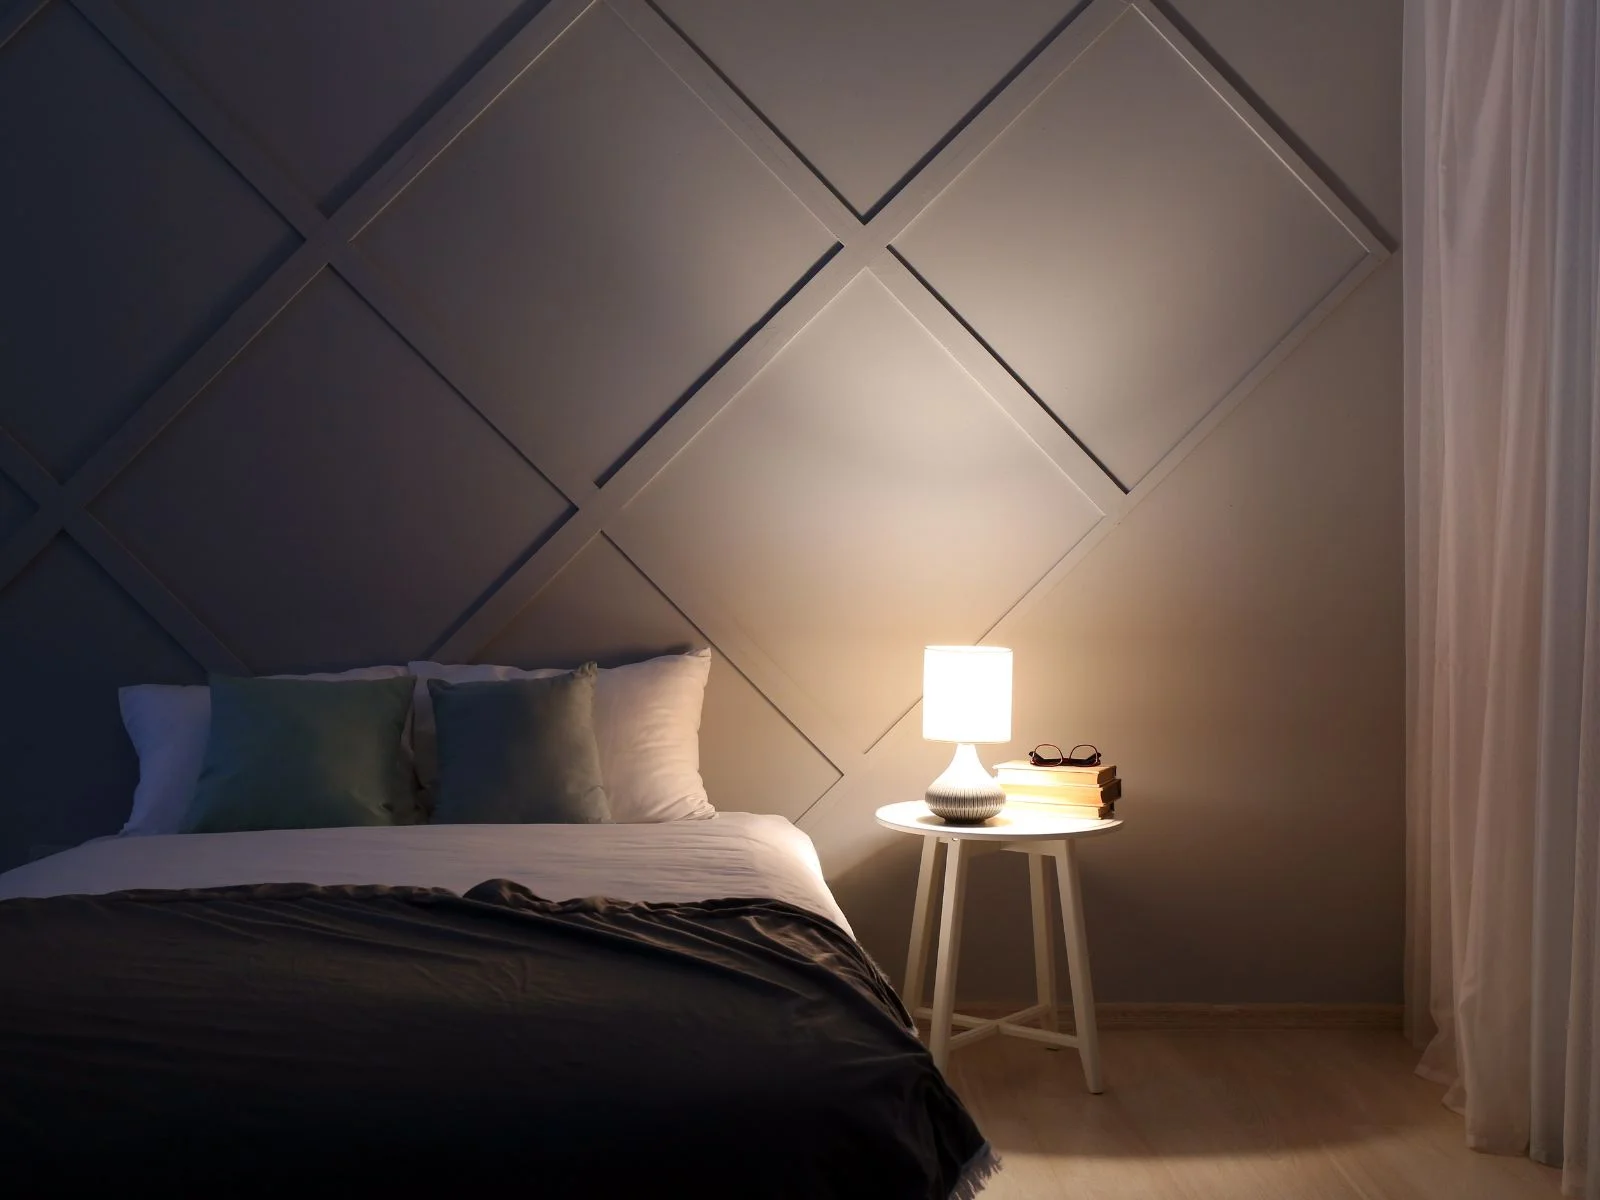 臥室佈置直接影響著我們的睡眠品質